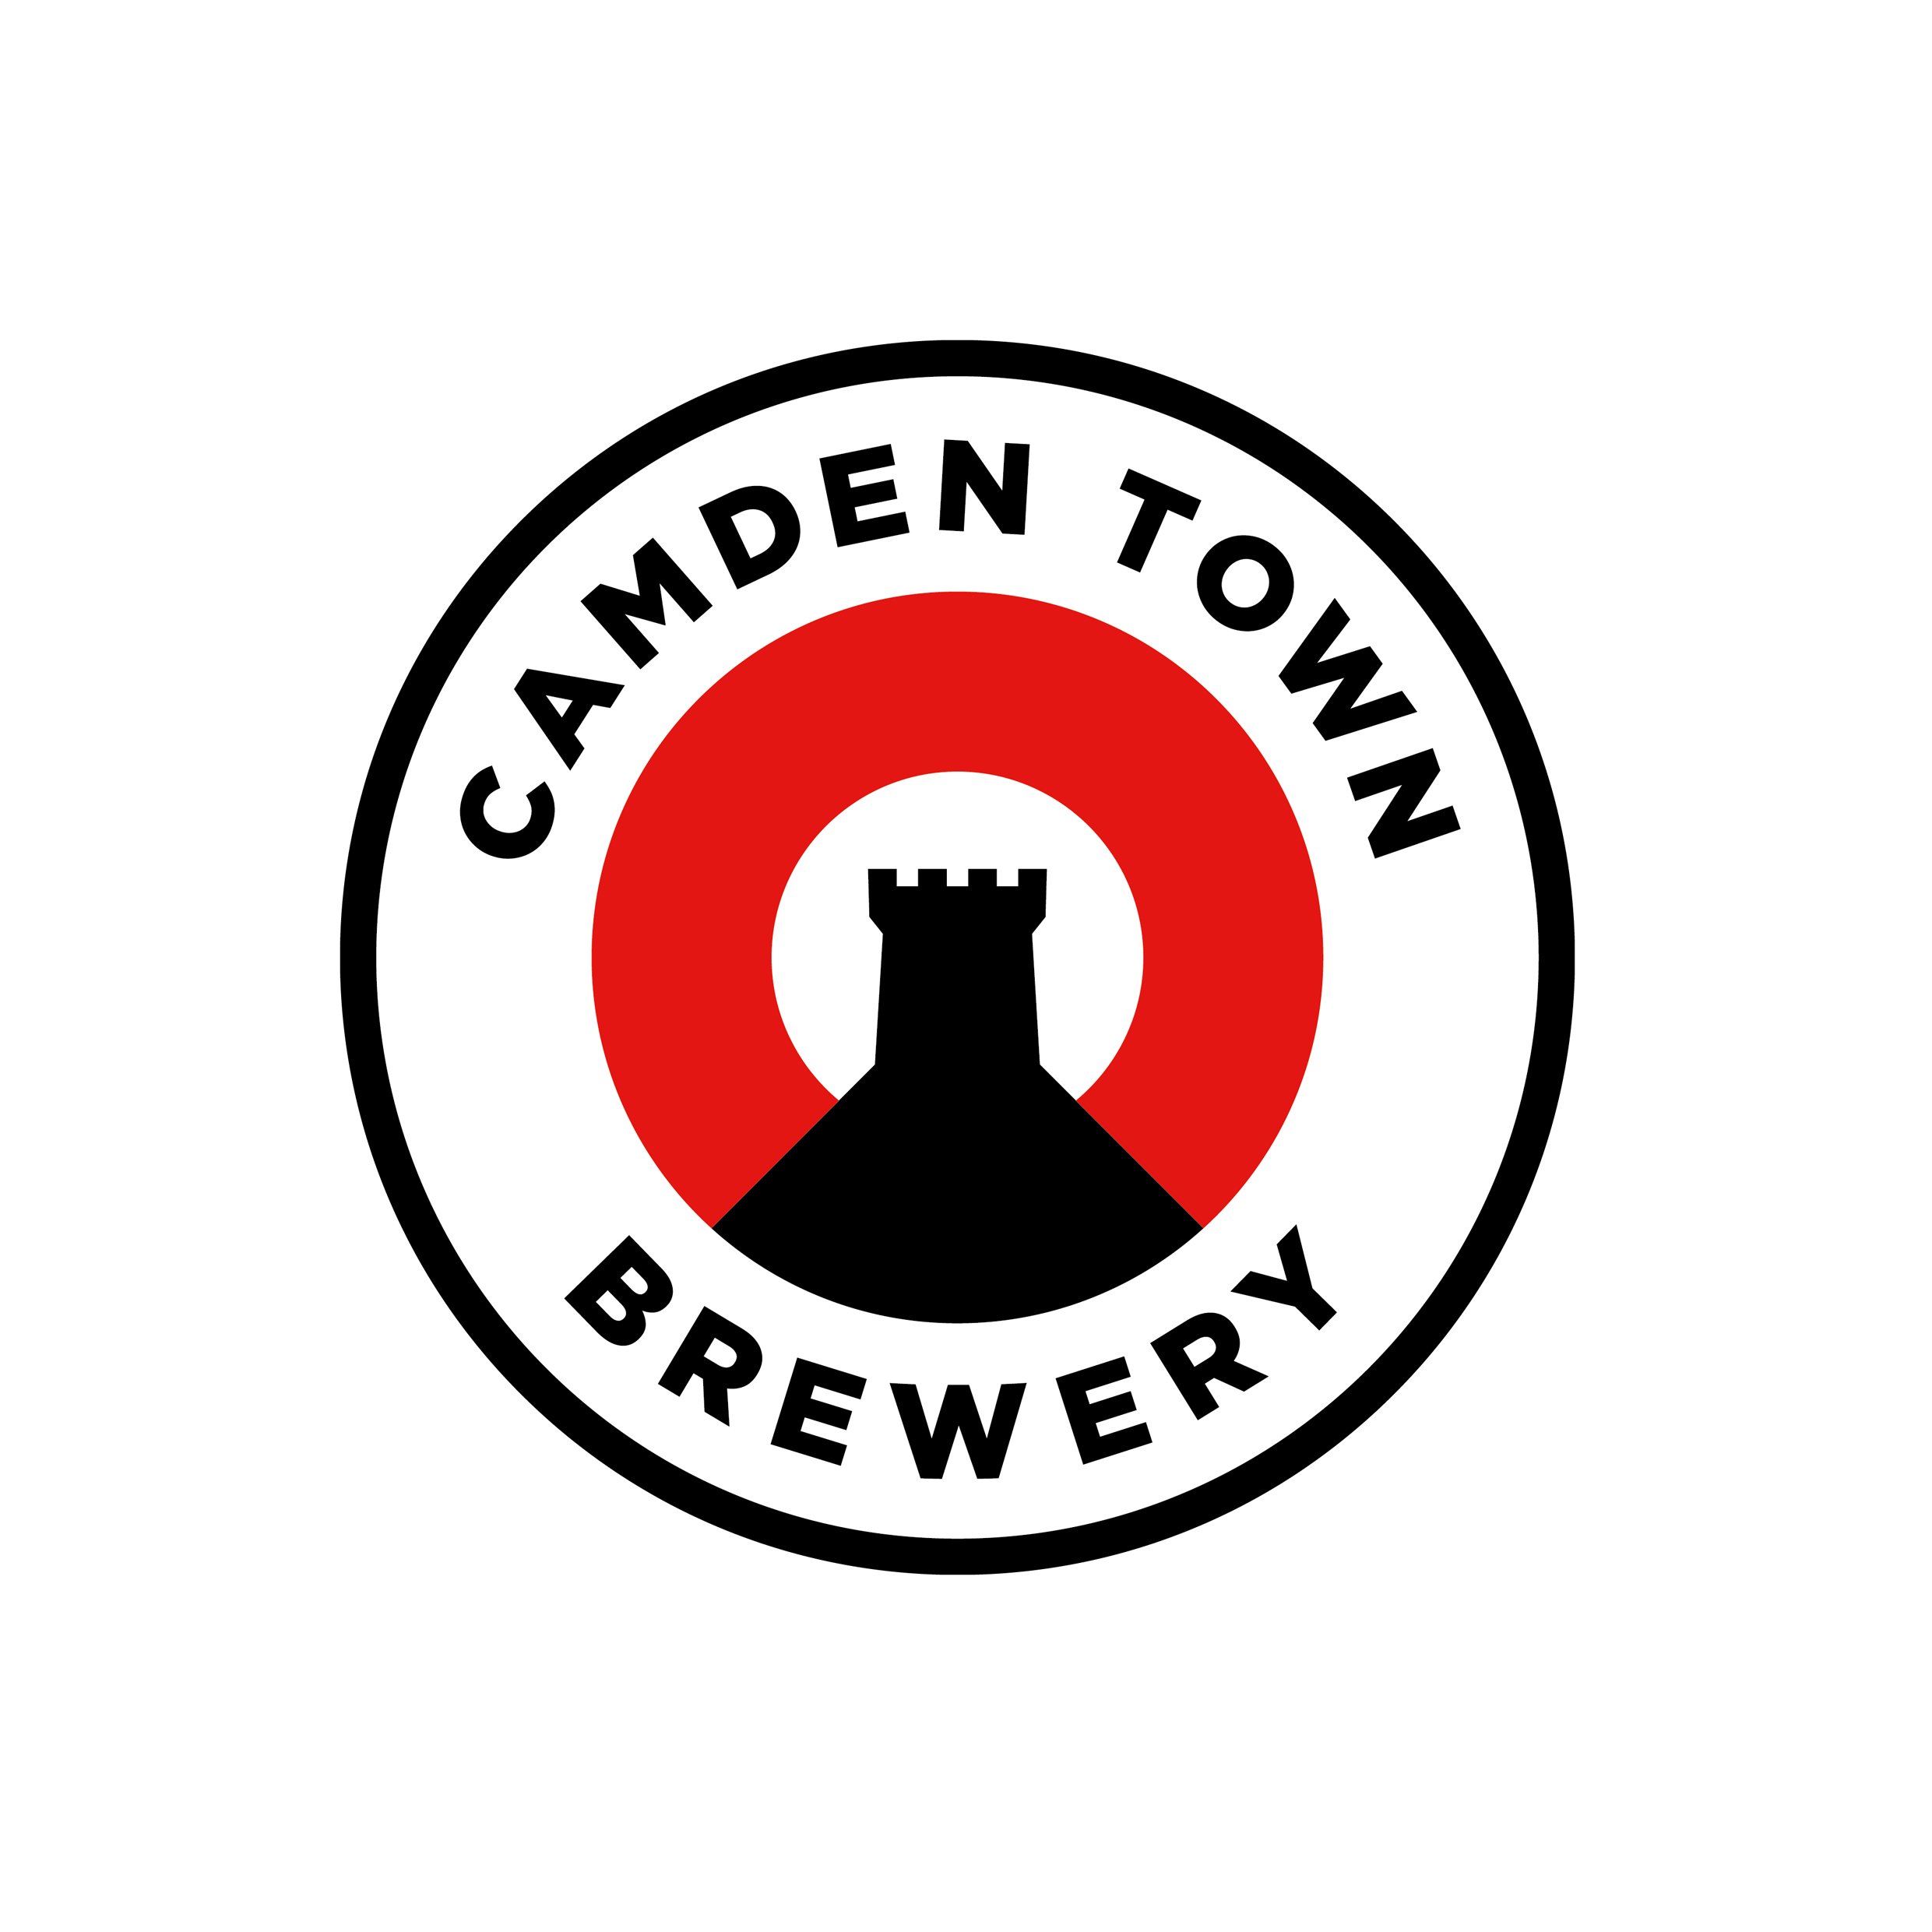 Camden_logo_smaller.png